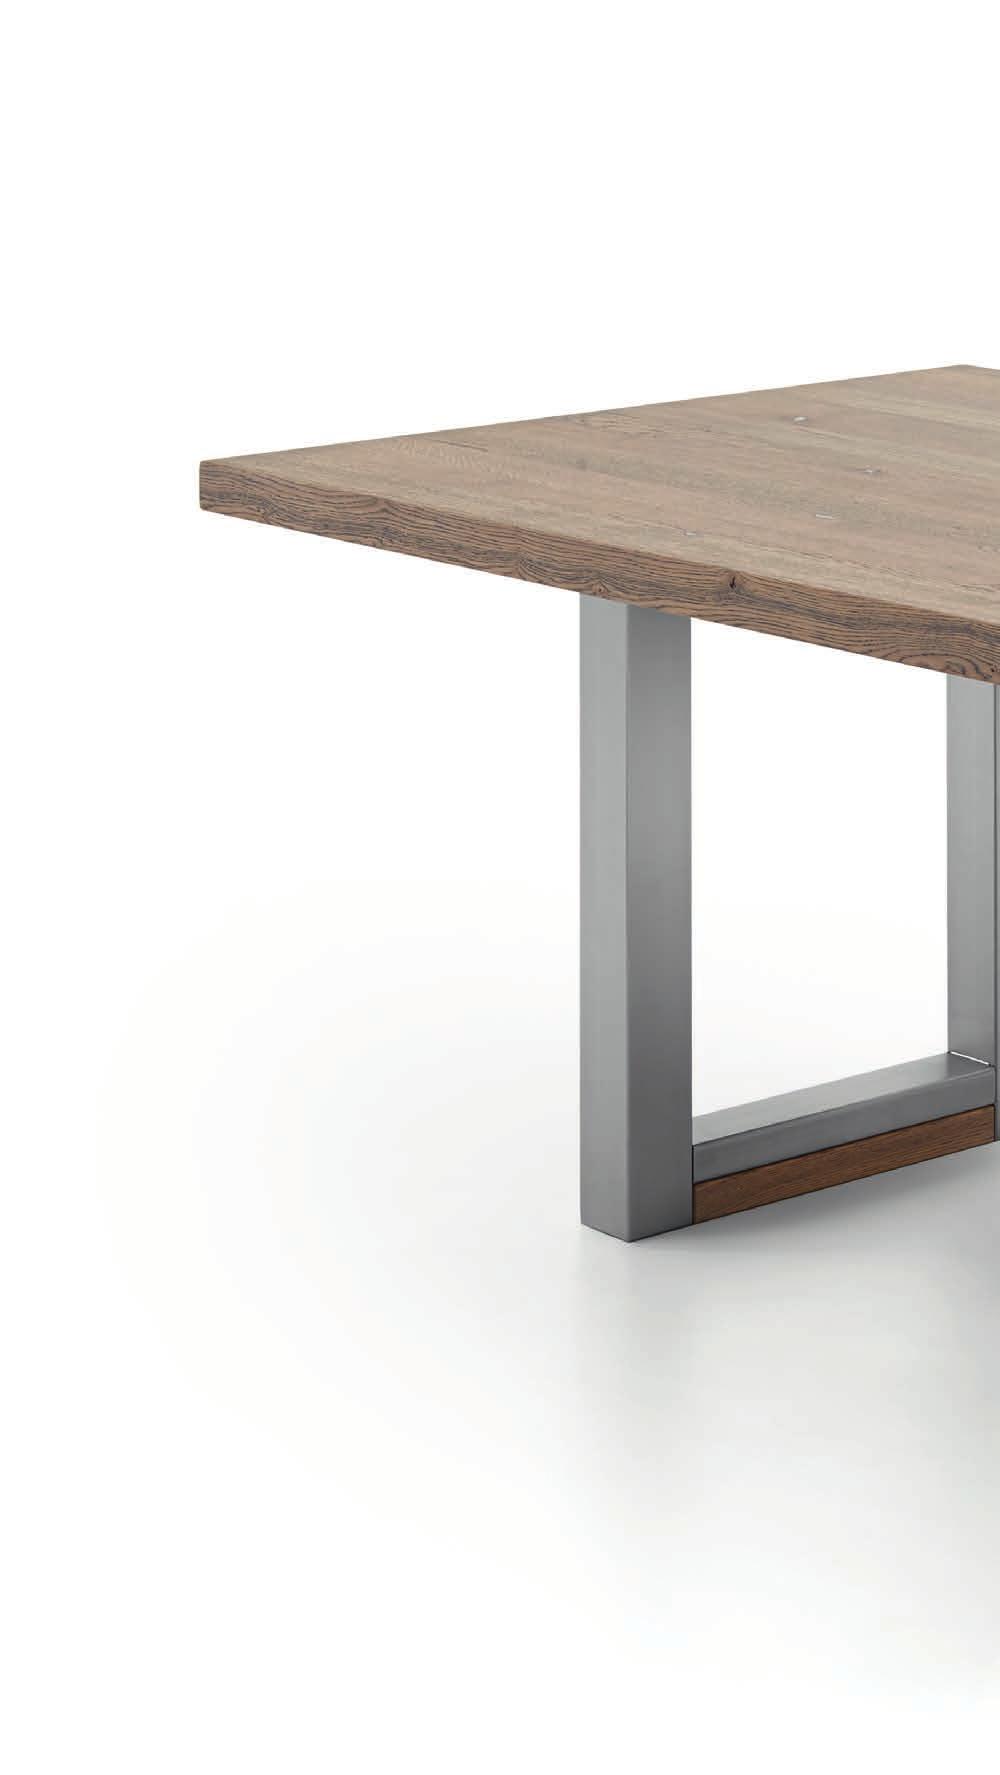 BOXX-Tische können mit bis zu zwei Ansteck platten um je 50 cm verlängert werden.